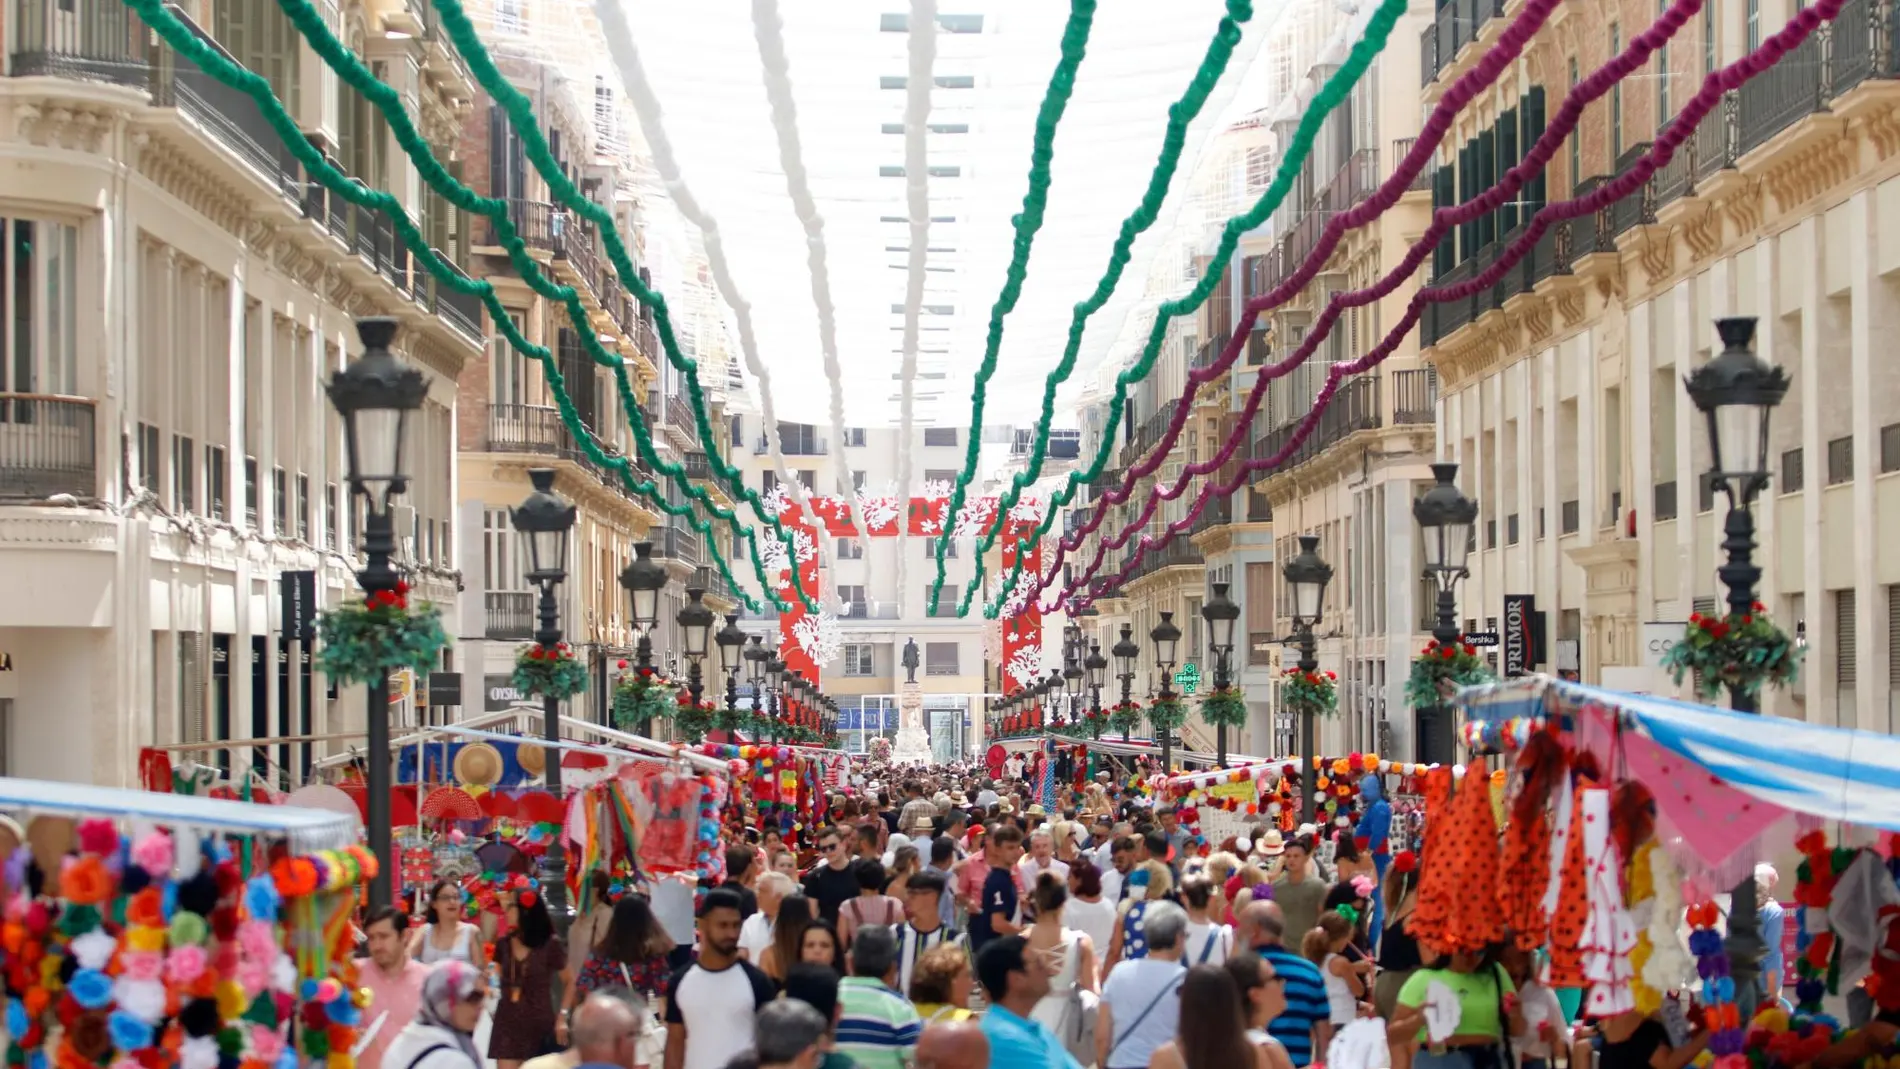 El alcalde de Málaga, Francisco de la Torre, ha destacado el “éxito” de la Feria más larga de la historia de la capital / Foto: EP